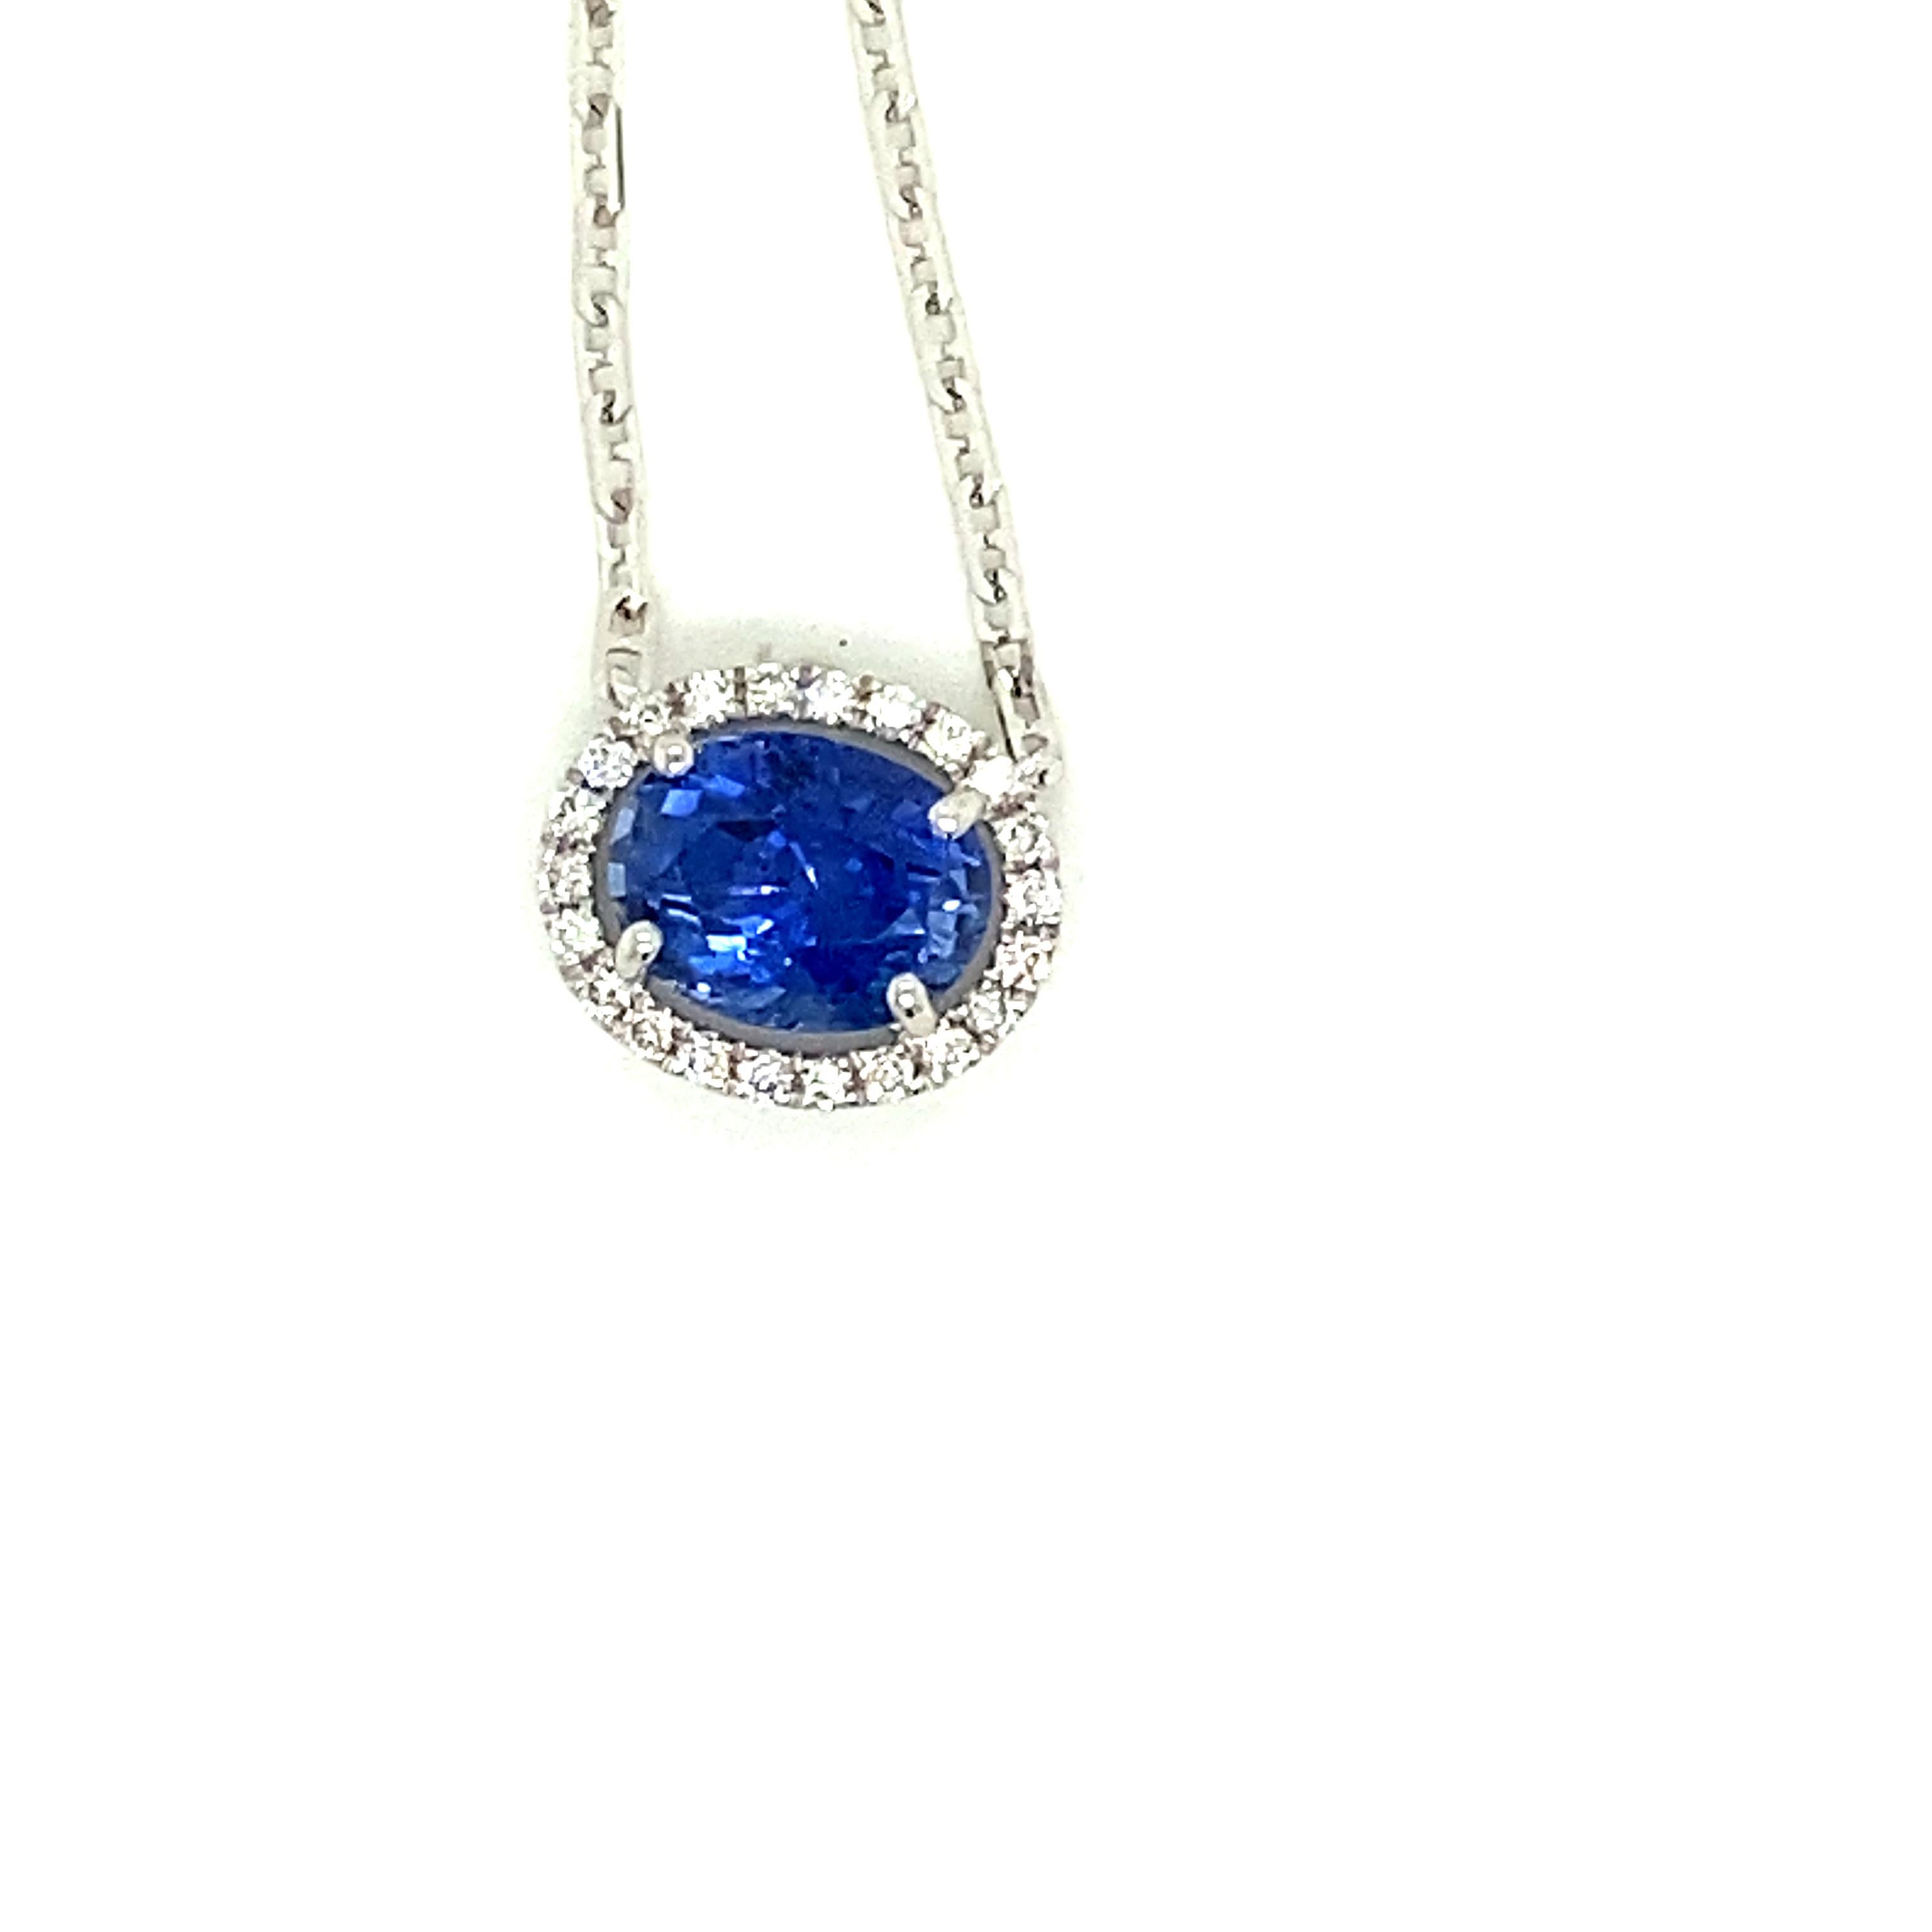 1,82 Karat Ovalschliff Lebendiger blauer Saphir und weißer Diamant-Anhänger Halskette:

Der wunderschöne Anhänger besteht aus einem blauen Saphir im Ovalschliff von 1,82 Karat, der von einem Kranz aus weißen Diamanten im Rundbrillantschliff von 0,12